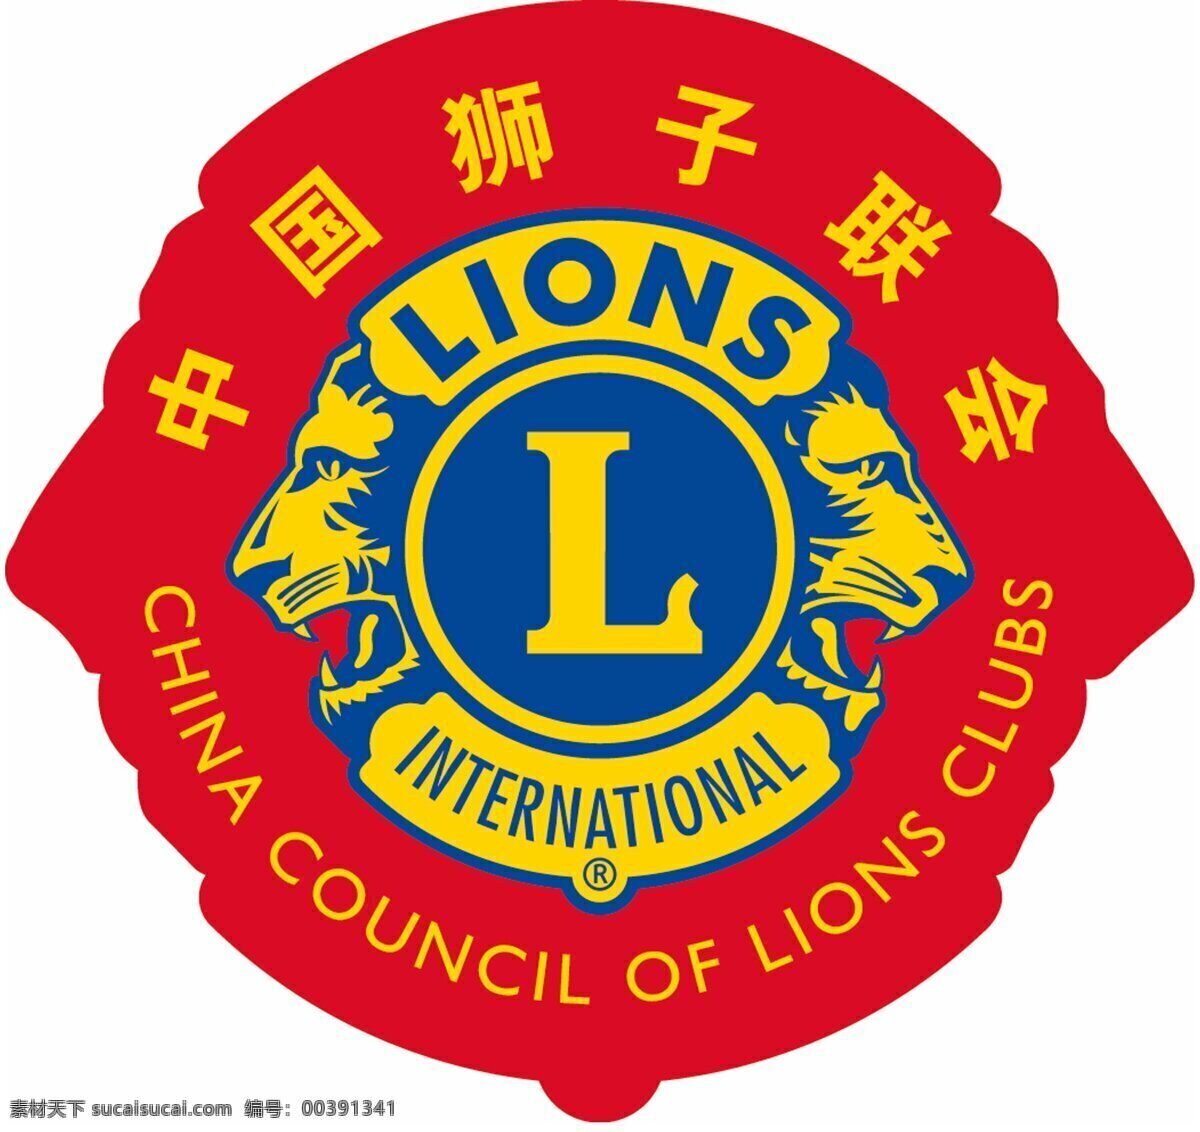 狮子会 logo lions 双狮子头 标志图标 企业 标志